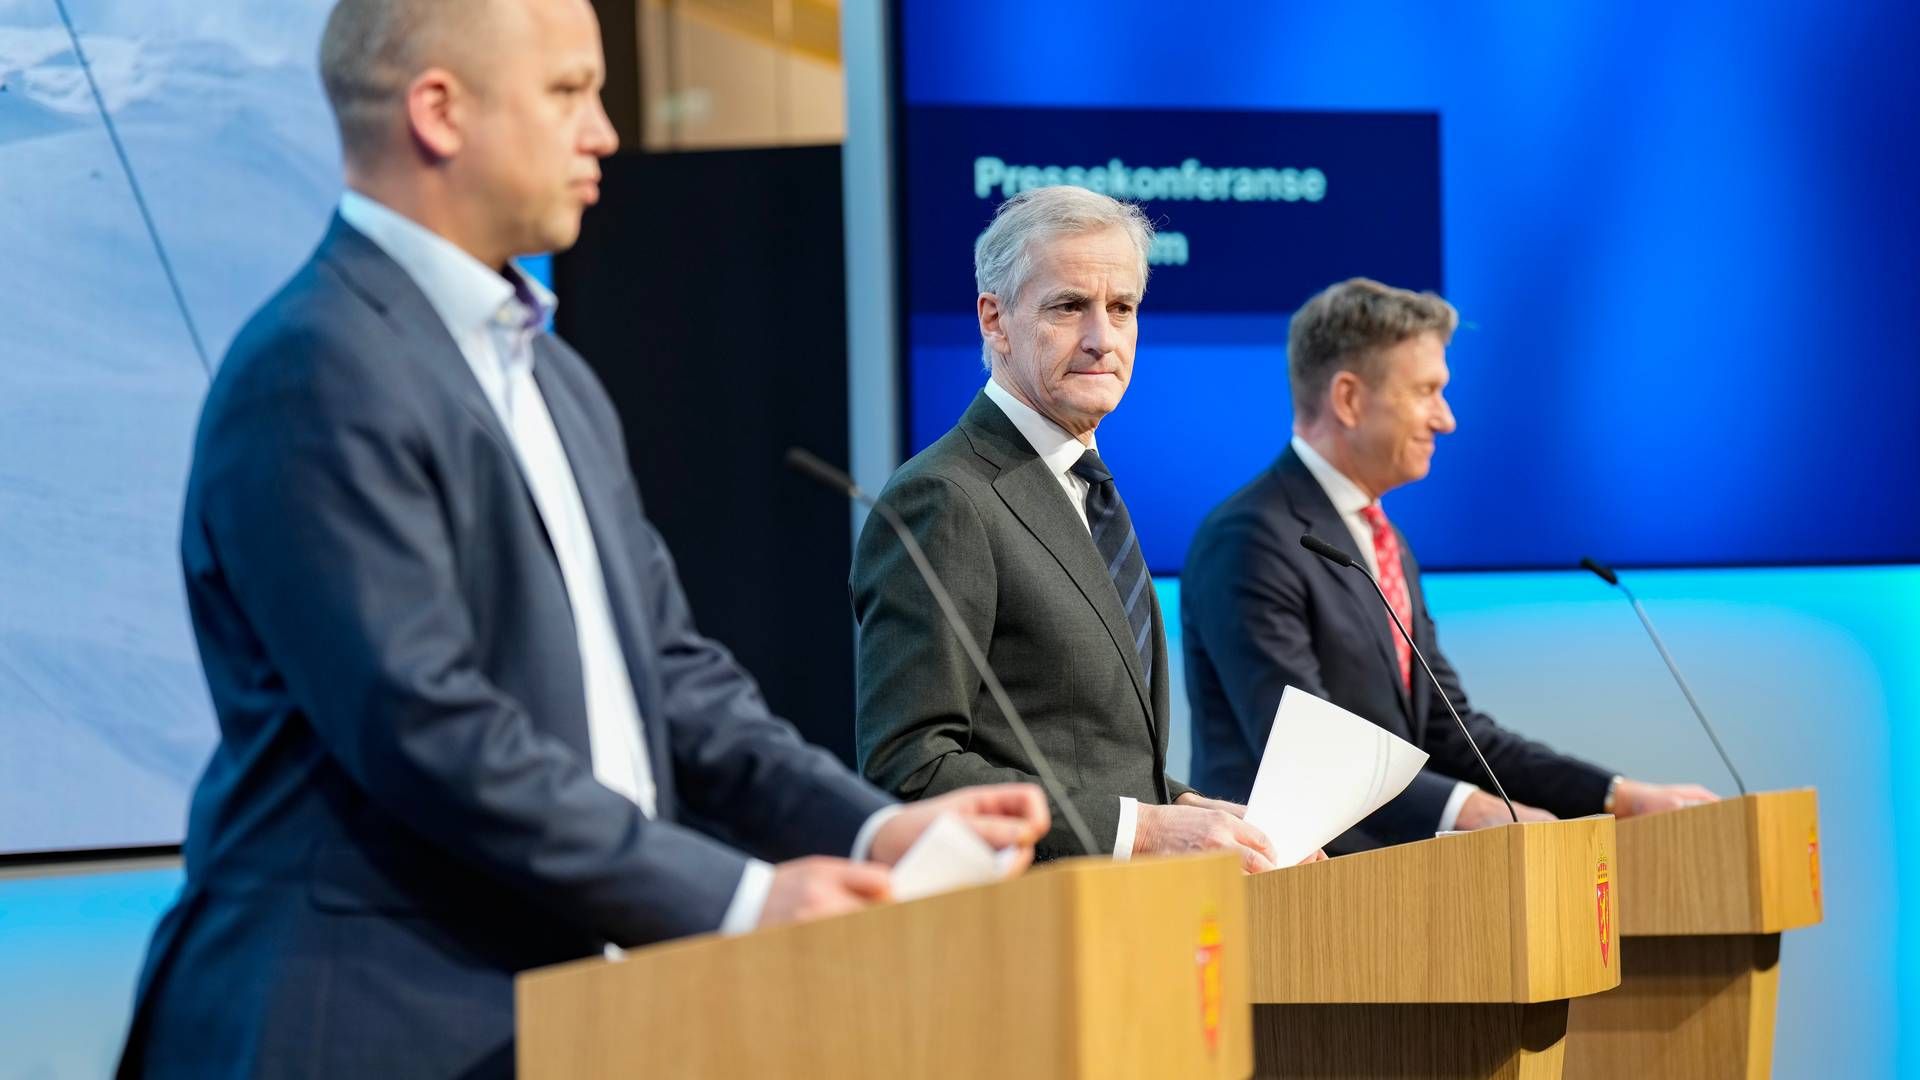 ENDRER STRØMSTØTTEN: Regjeringen la frem nye innretninger på strømstøtten på en pressekonferanse onsdag kveld. | Foto: Fredrik Varfjell / NTB